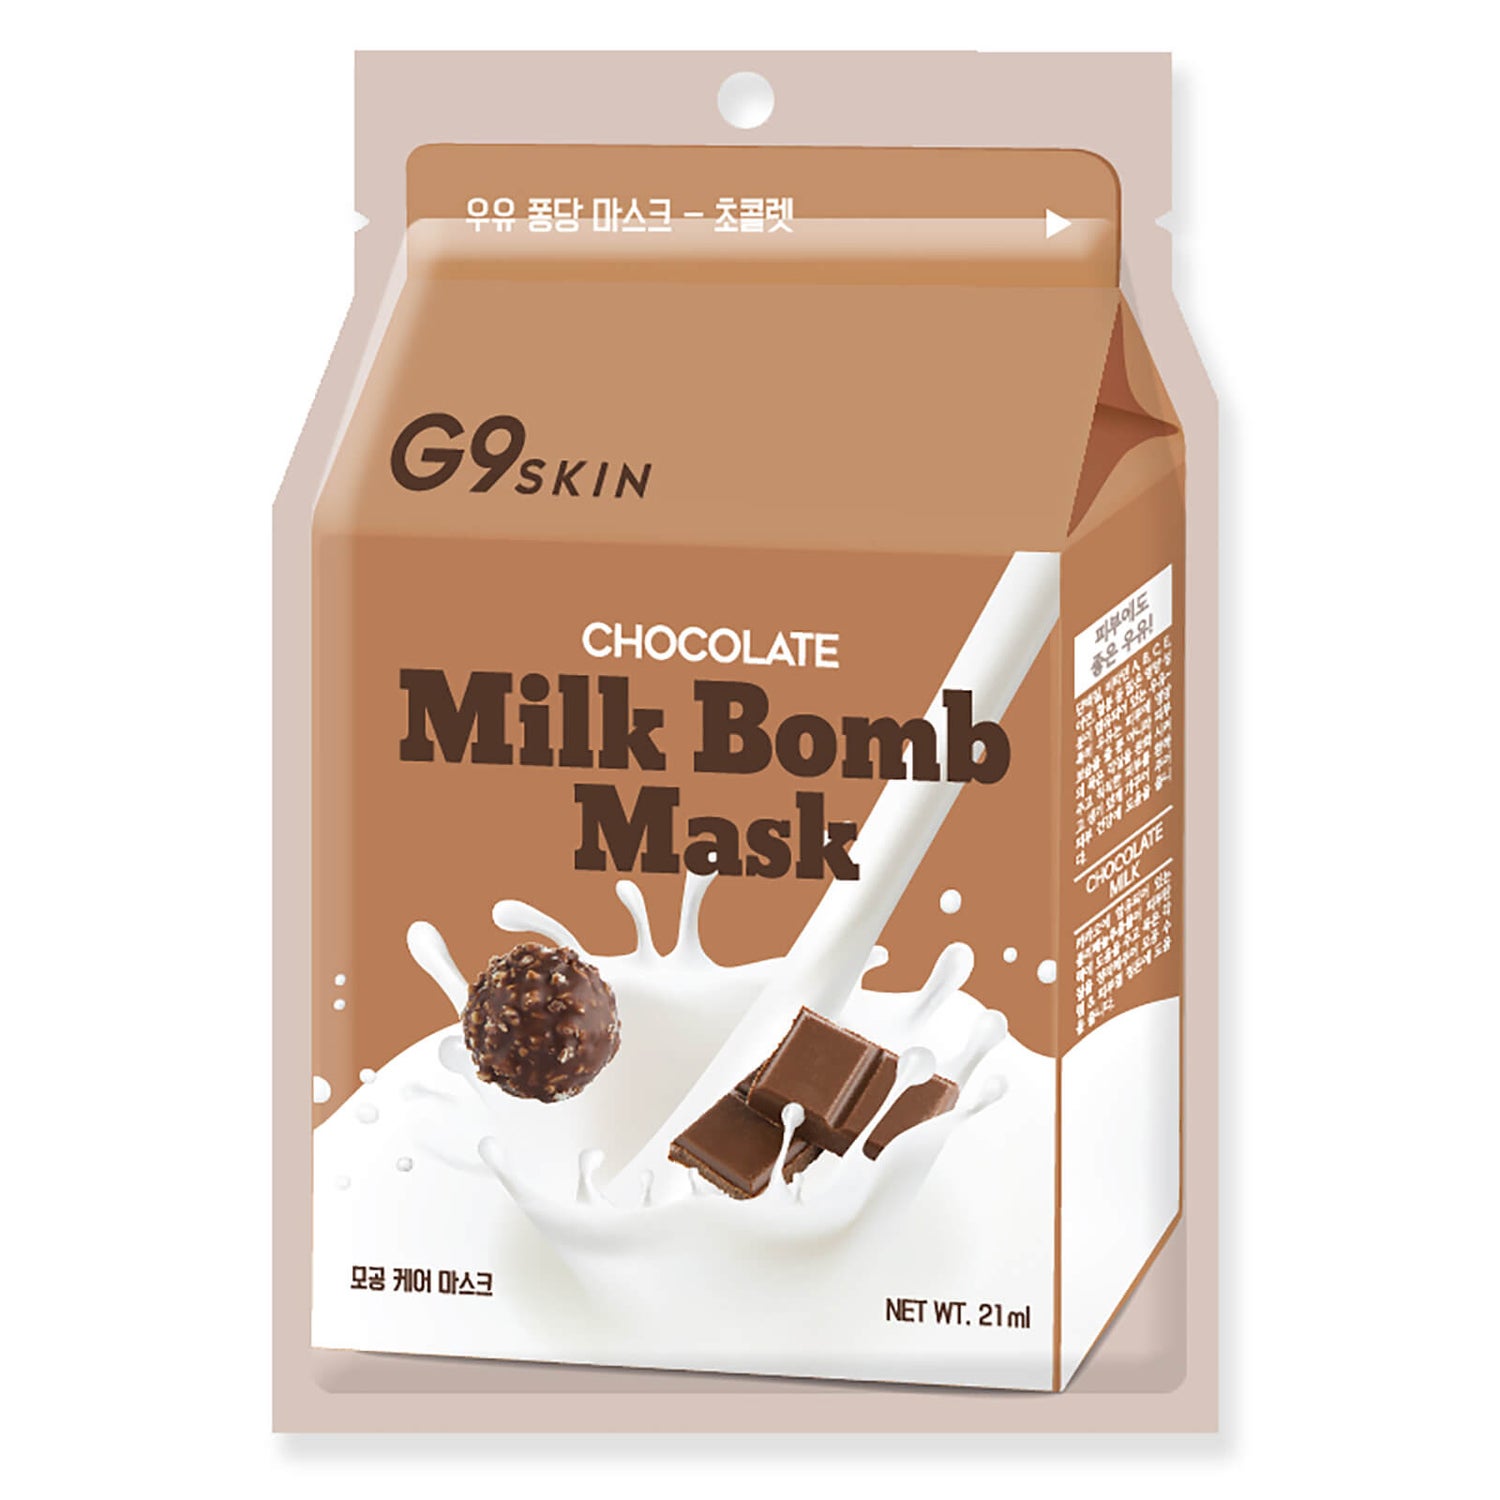 Mascarilla facial con proteína de leche Bomb de G9SKIN - Chocolate 21 ml